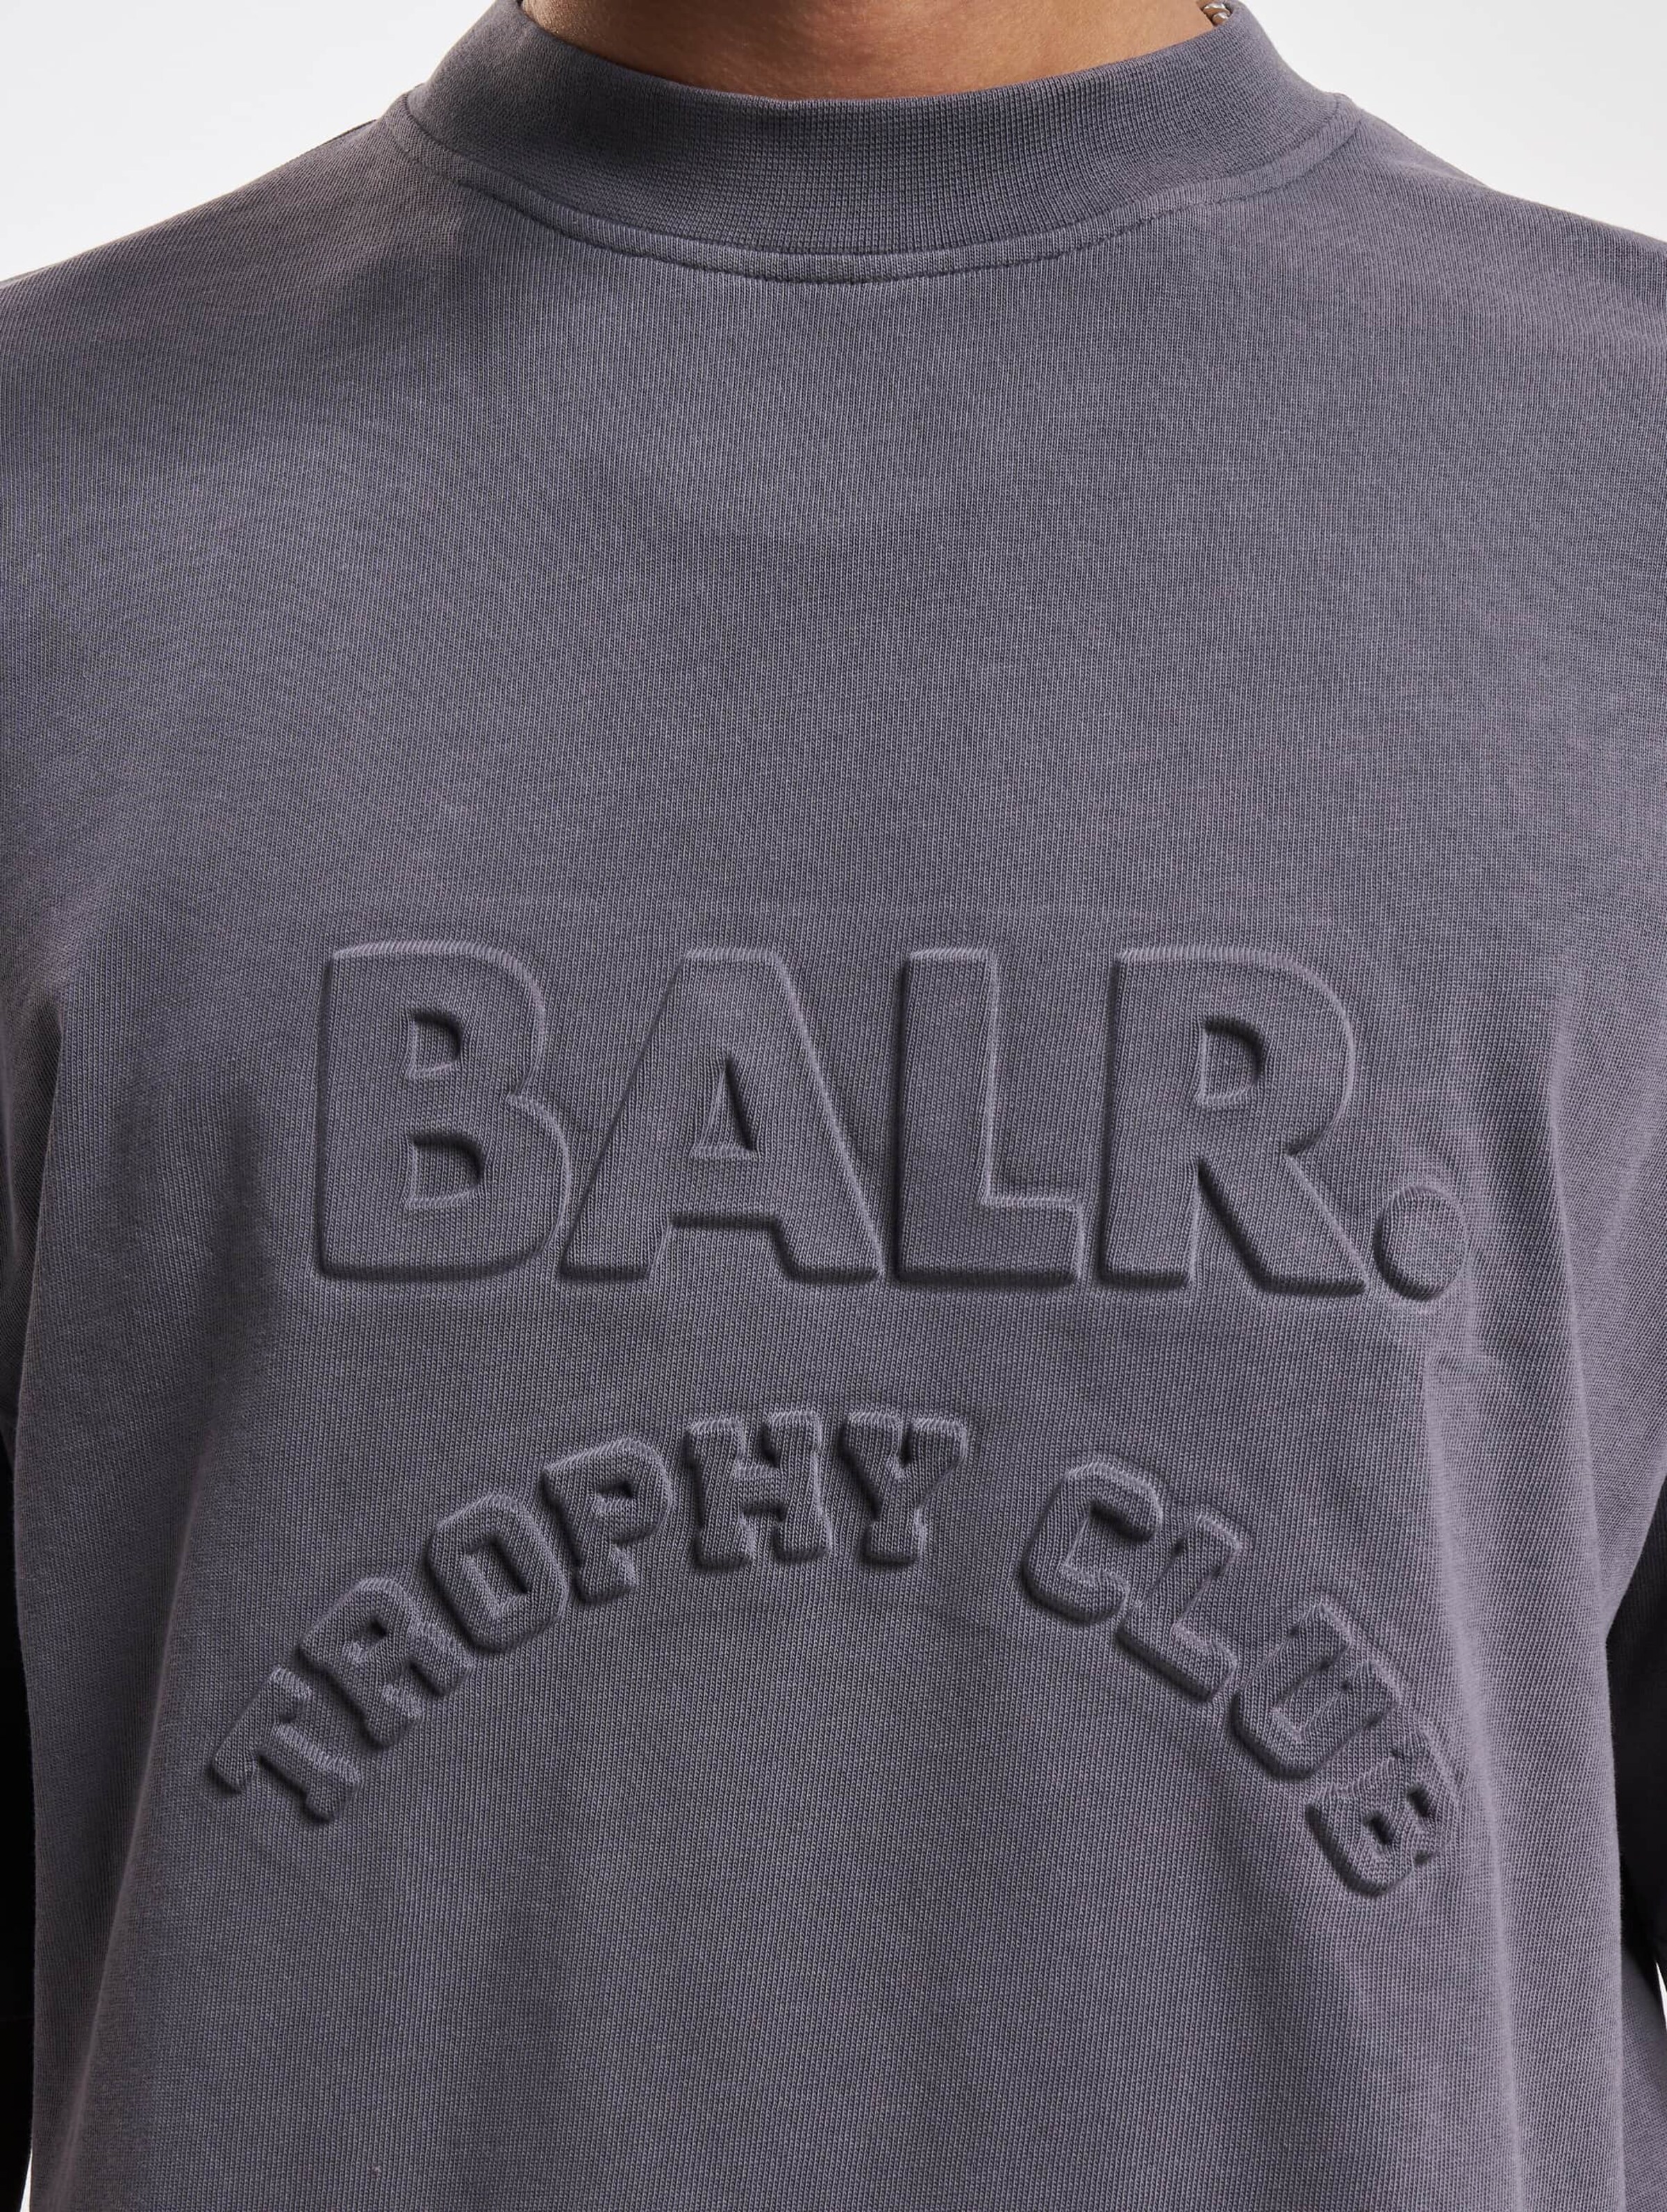 日本入荷BALR. Brand Box LogoロングTシャツ サイズS 新品未使用 トップス